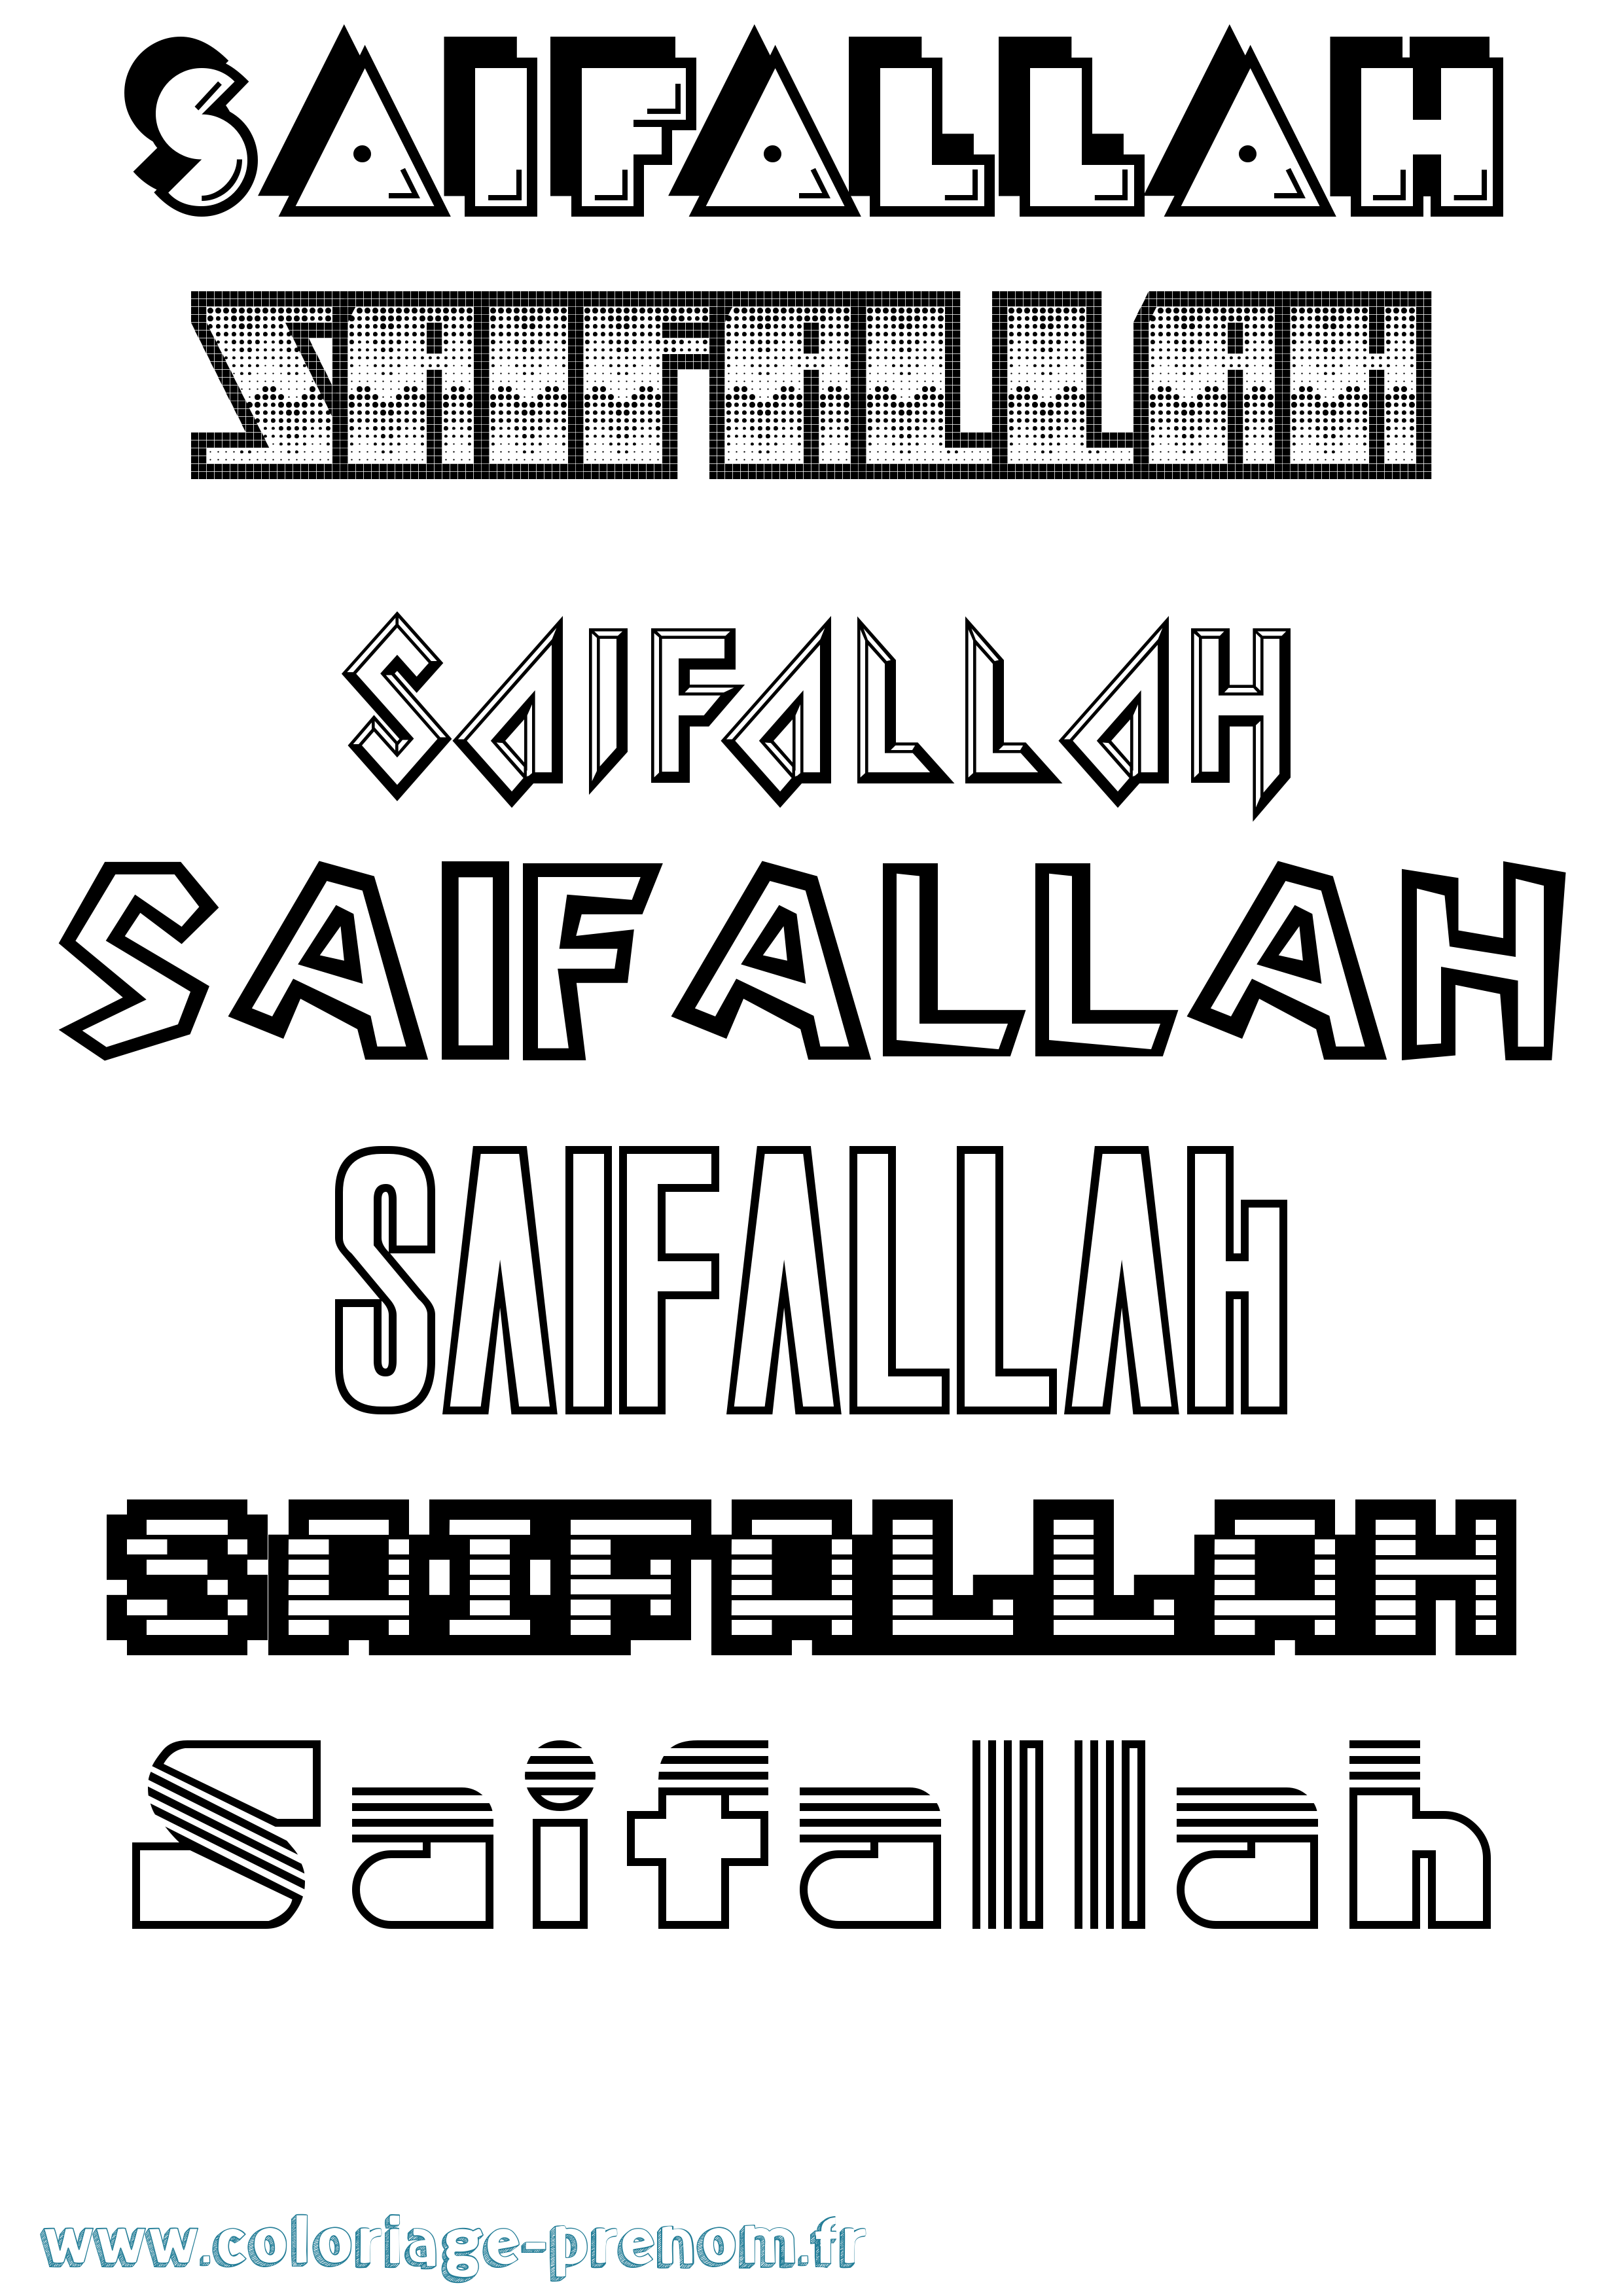 Coloriage prénom Saifallah Jeux Vidéos